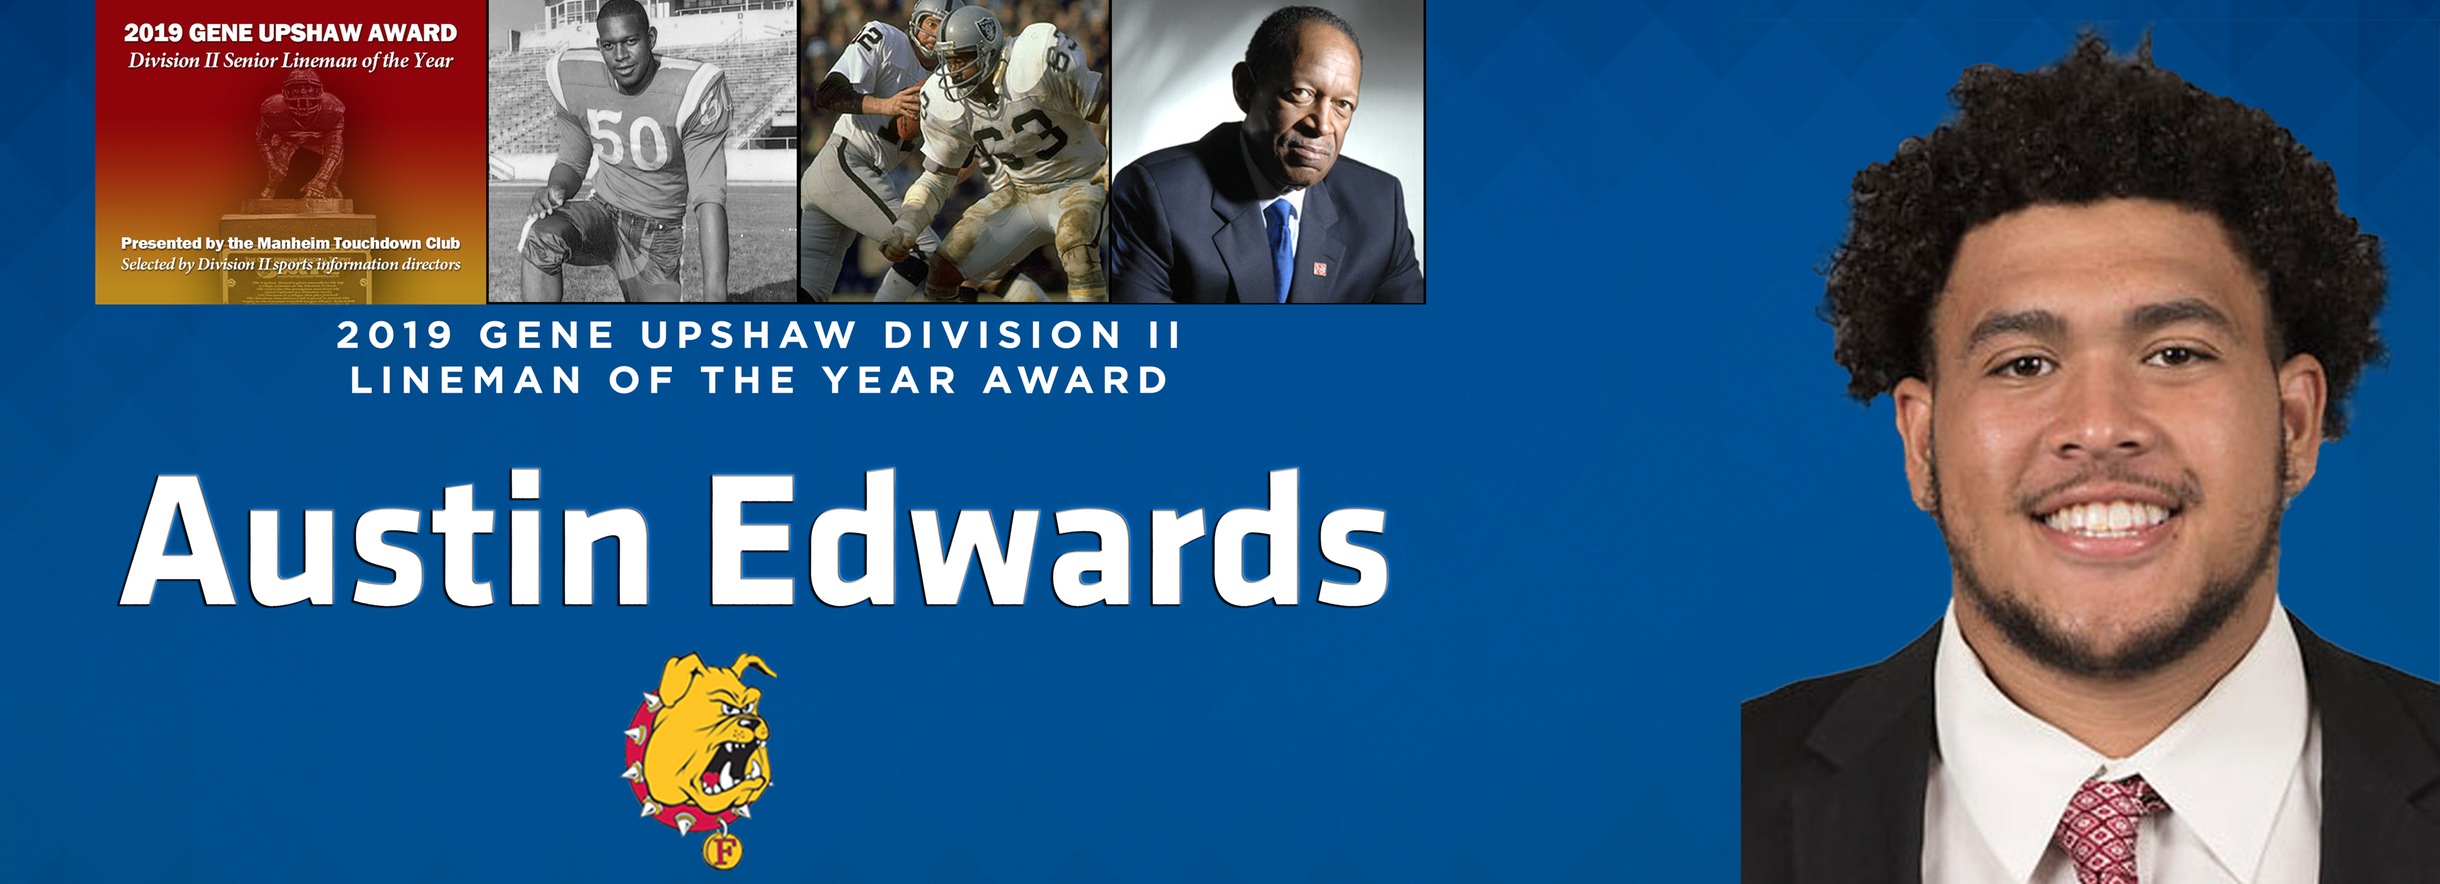 FSU's Austin Edwards Wins 2019 Gene Upshaw Award